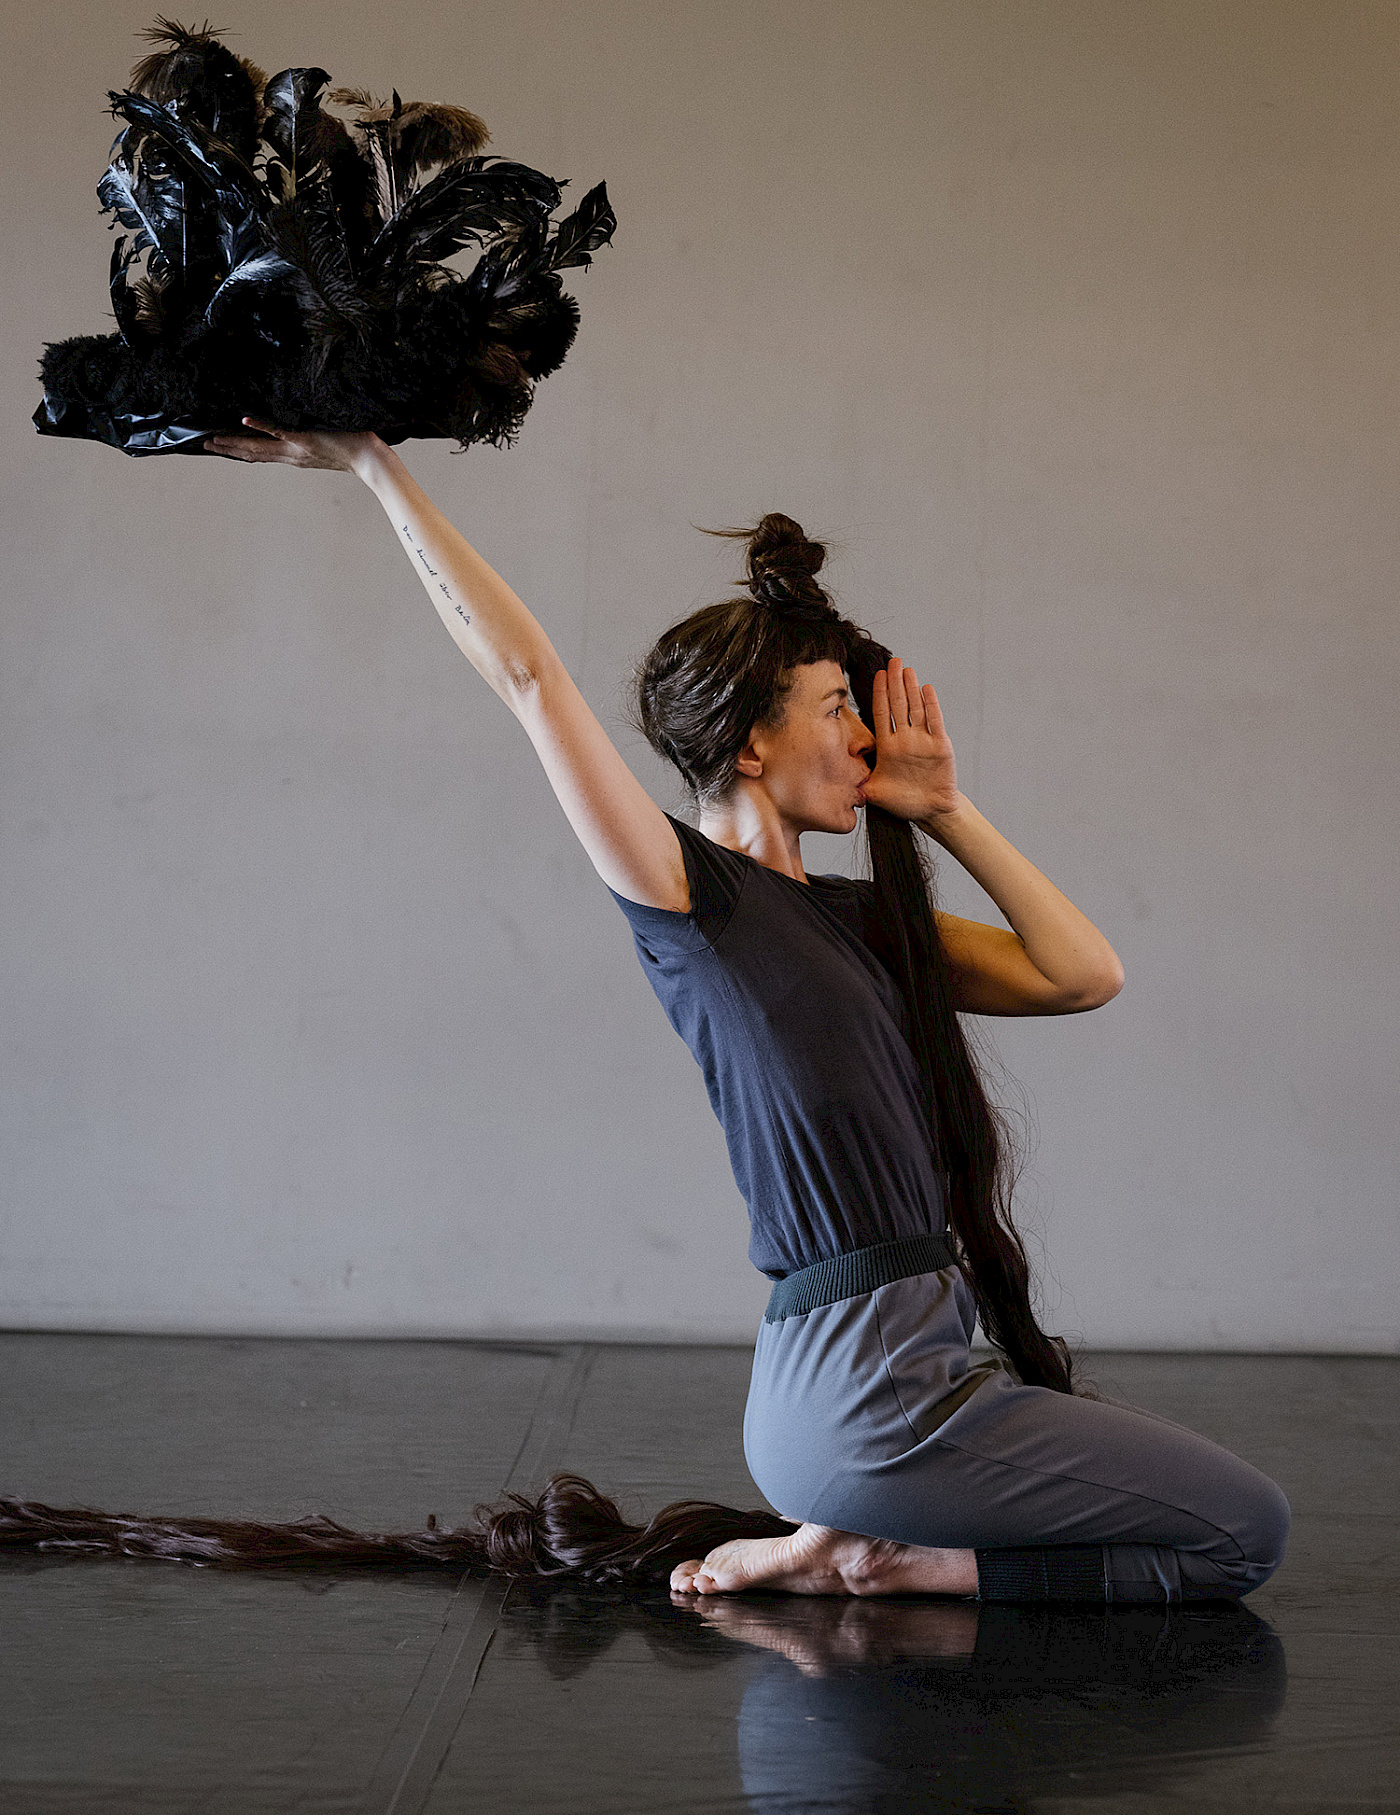 Tänzerin kniet auf dem Boden, mit durchgestrecktem Arm hält sie eine Federskulptur nach oben, sie hat den Daumen der anderen Hand im Mund.